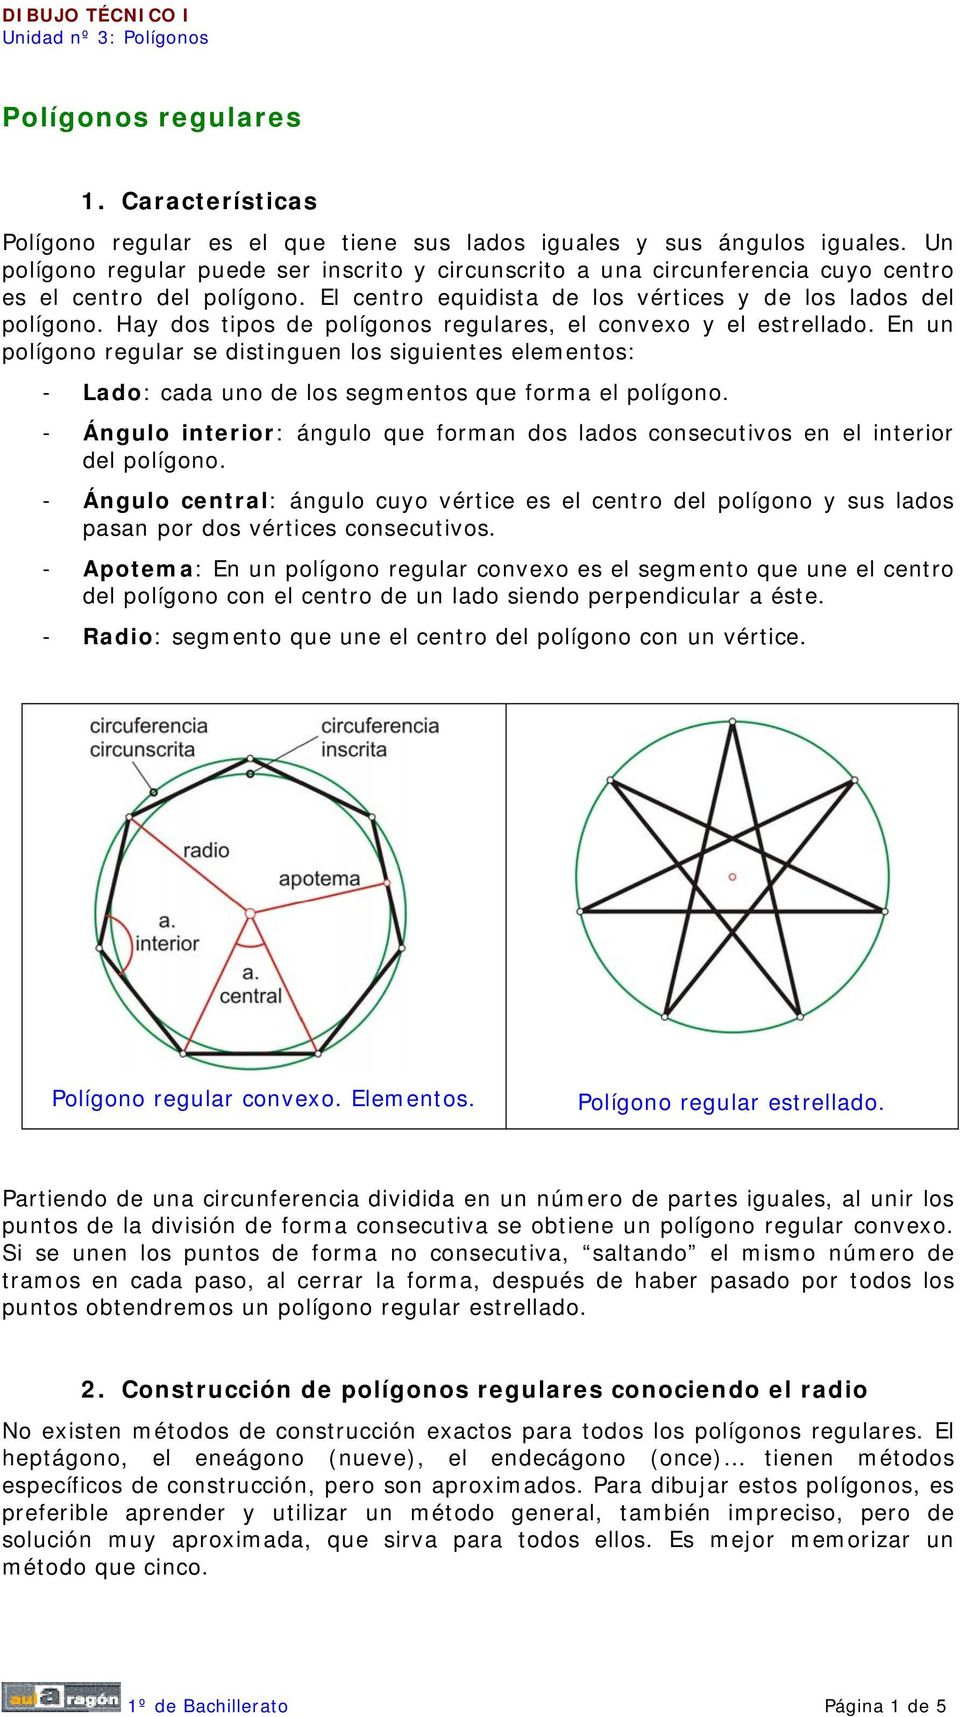 Hay dos tipos de polígonos regulares, el convexo y el estrellado. En un polígono regular se distinguen los siguientes elementos: - Lado: cada uno de los segmentos que forma el polígono.